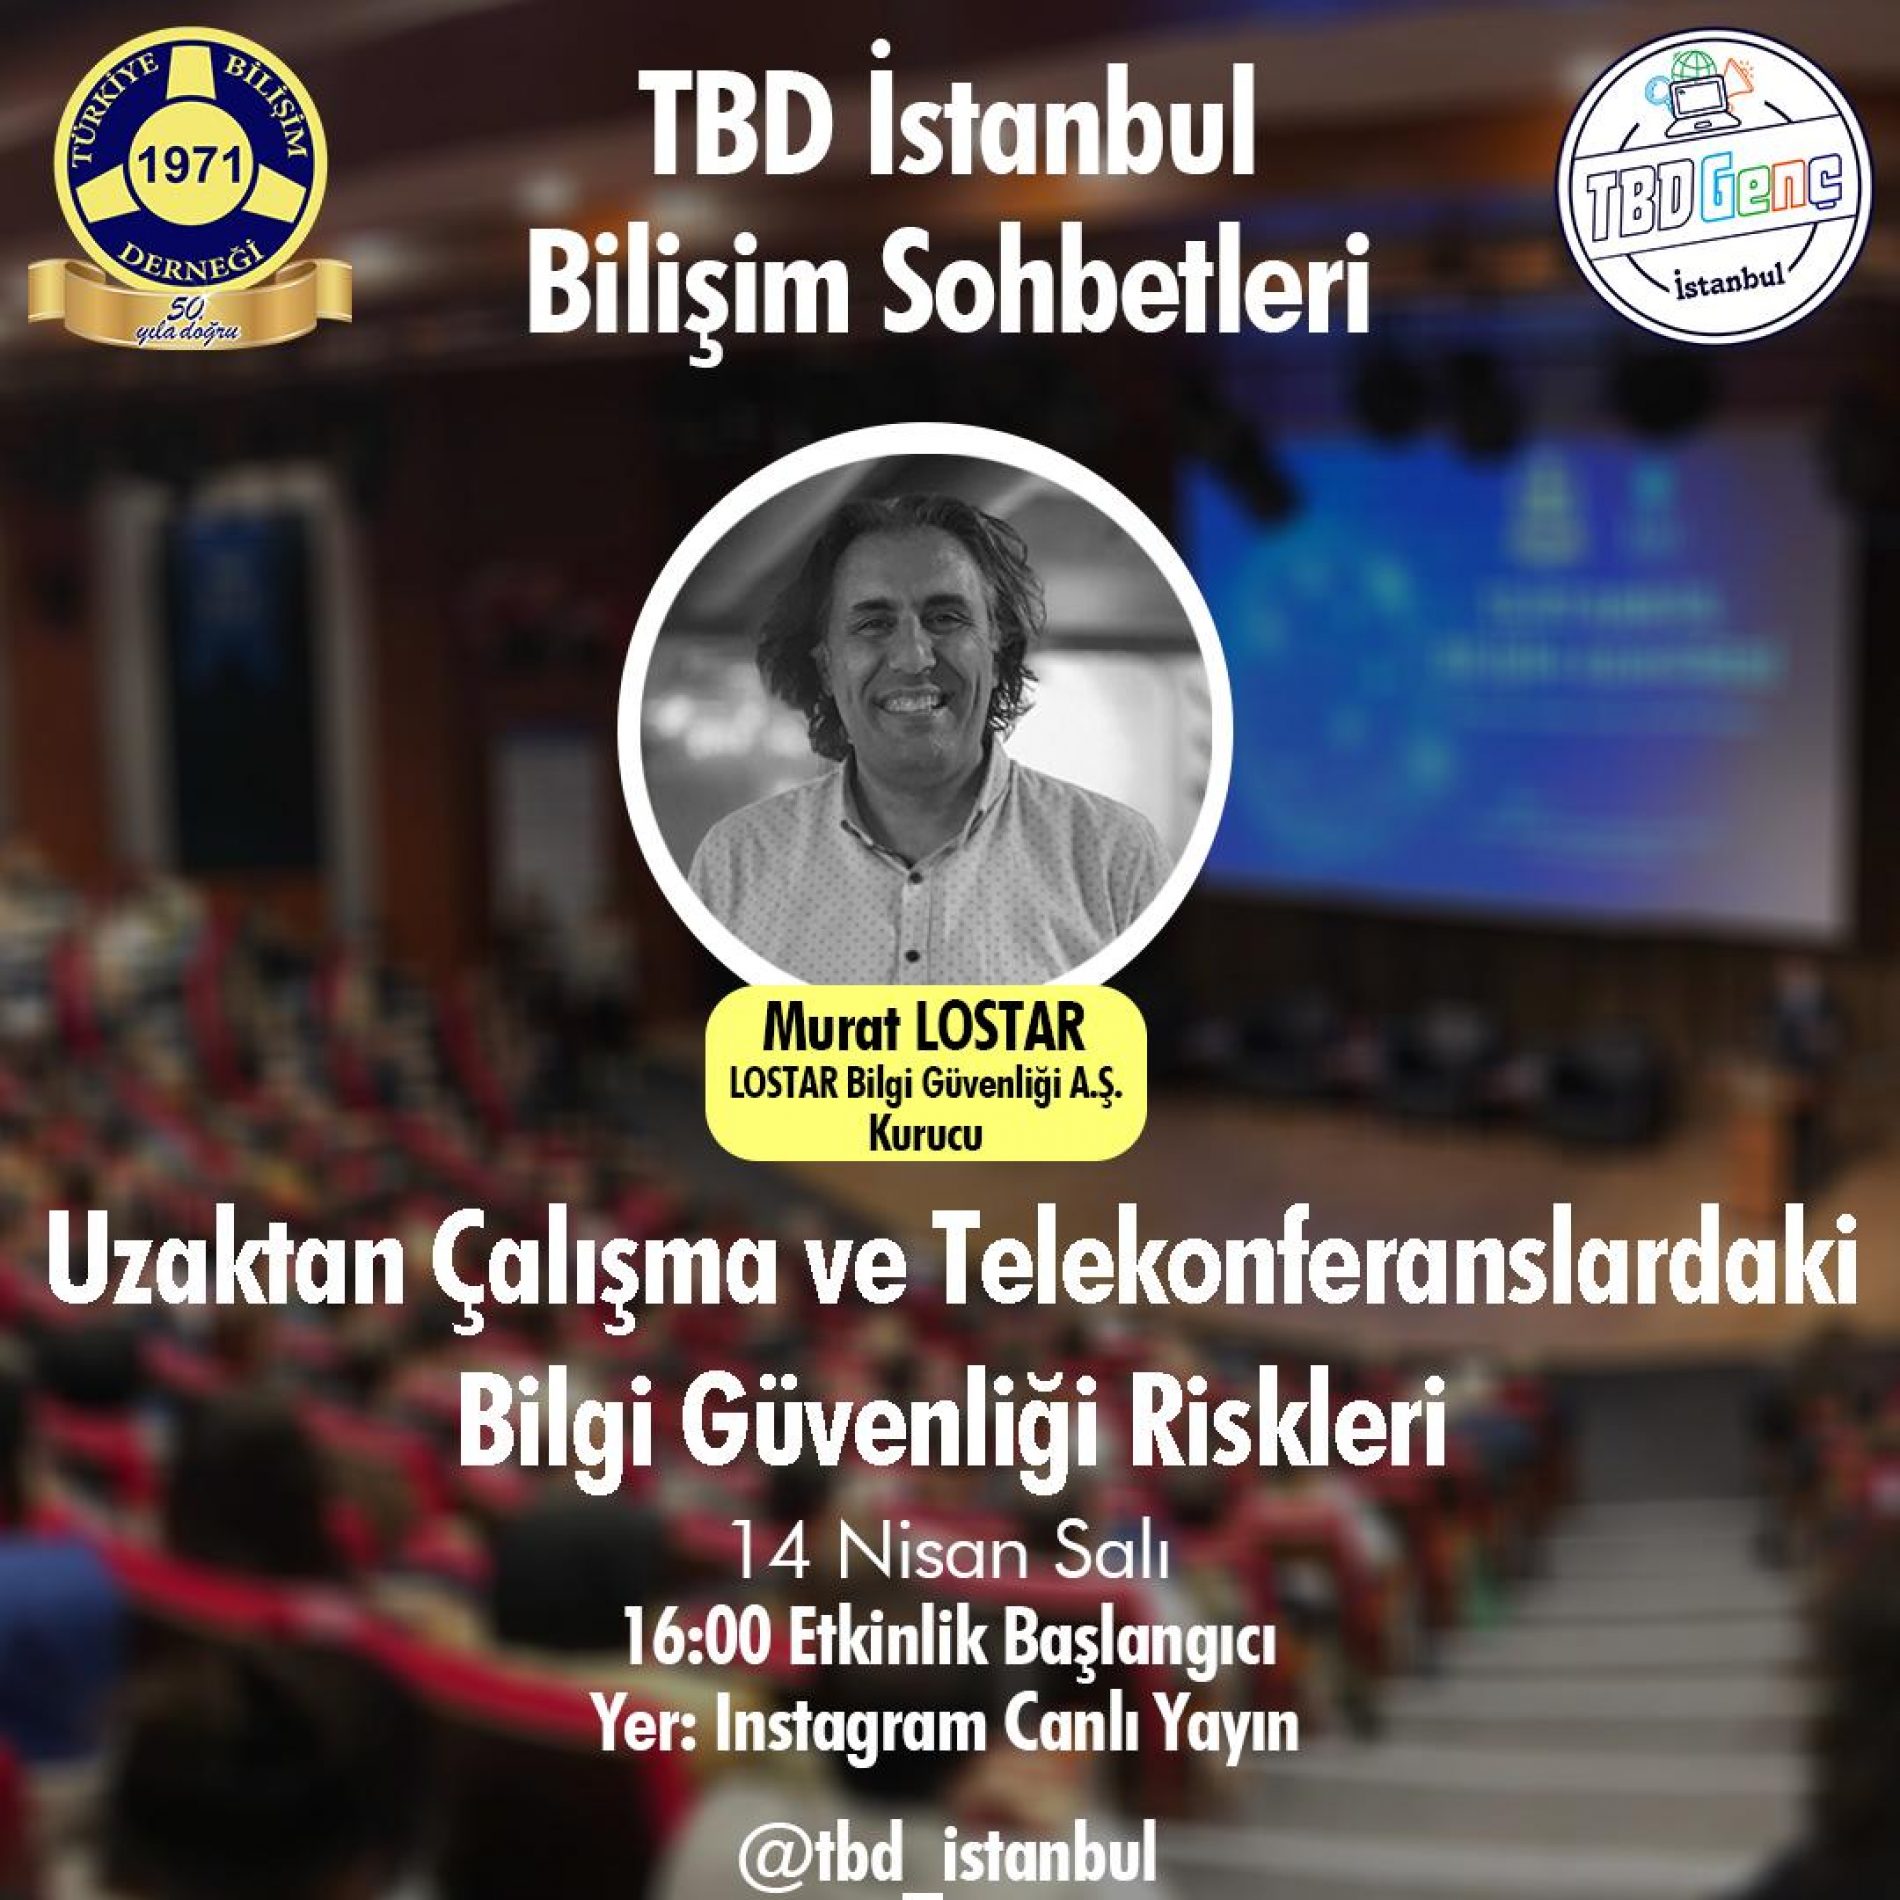 TBD İstanbul Şubesi Bilişim Sohbetleri: Uzaktan Çalışma ve Telekonferanslardaki Bilgi Güvenliği Riskleri